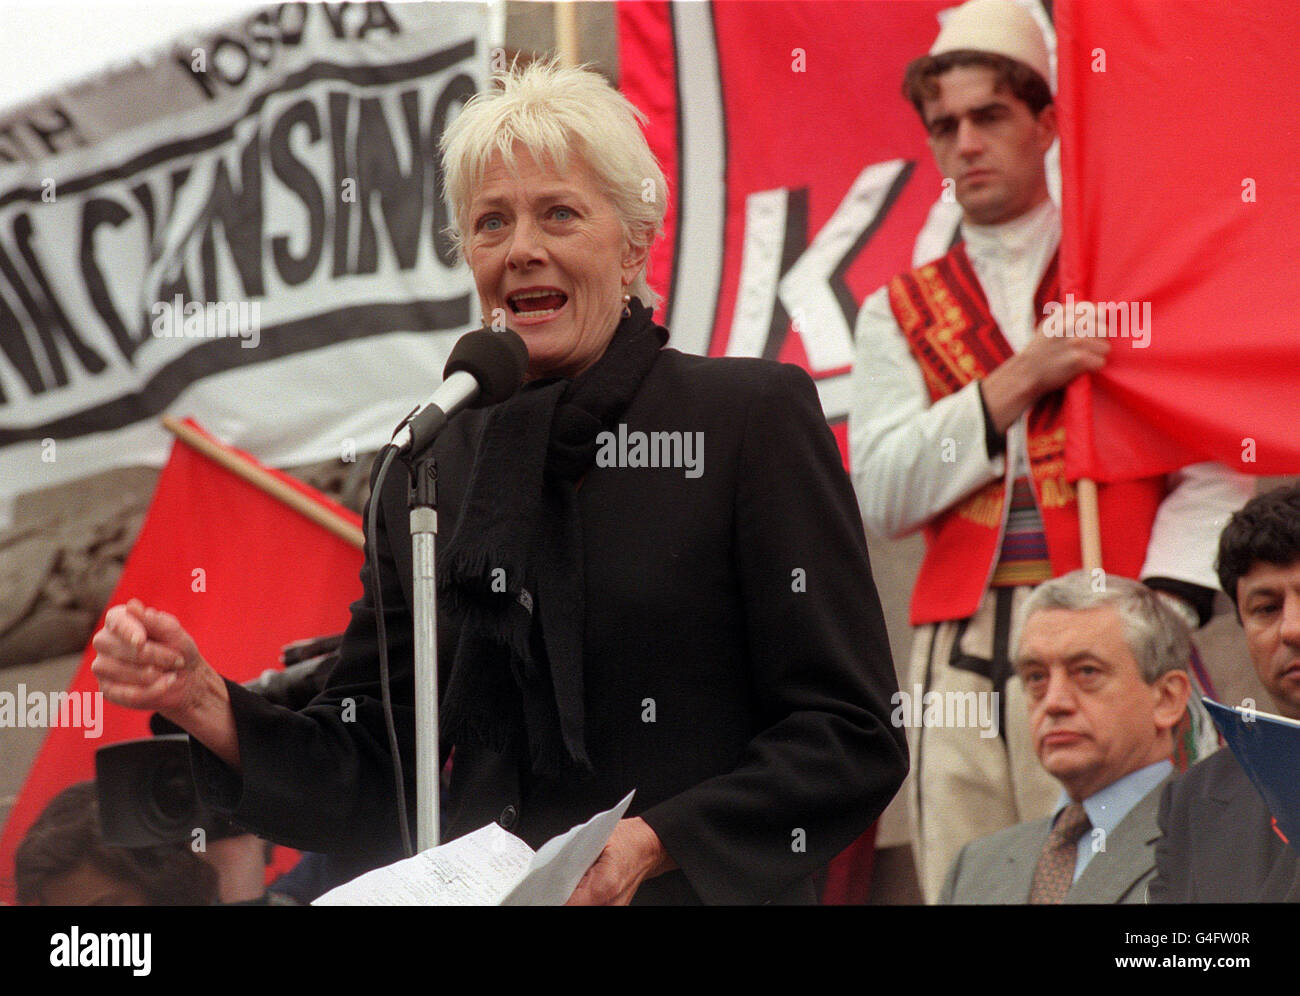 PA-News 10.04.98 spricht Schauspielerin Vanessa Redgrave während einer Protestkundgebung am Trafalgar Square, London, wo Tausende von Menschen trafen, um ihren Widerstand gegen die ethnische Säuberung der Albaner im Kosovo, Serbien zu äußern. Stockfoto